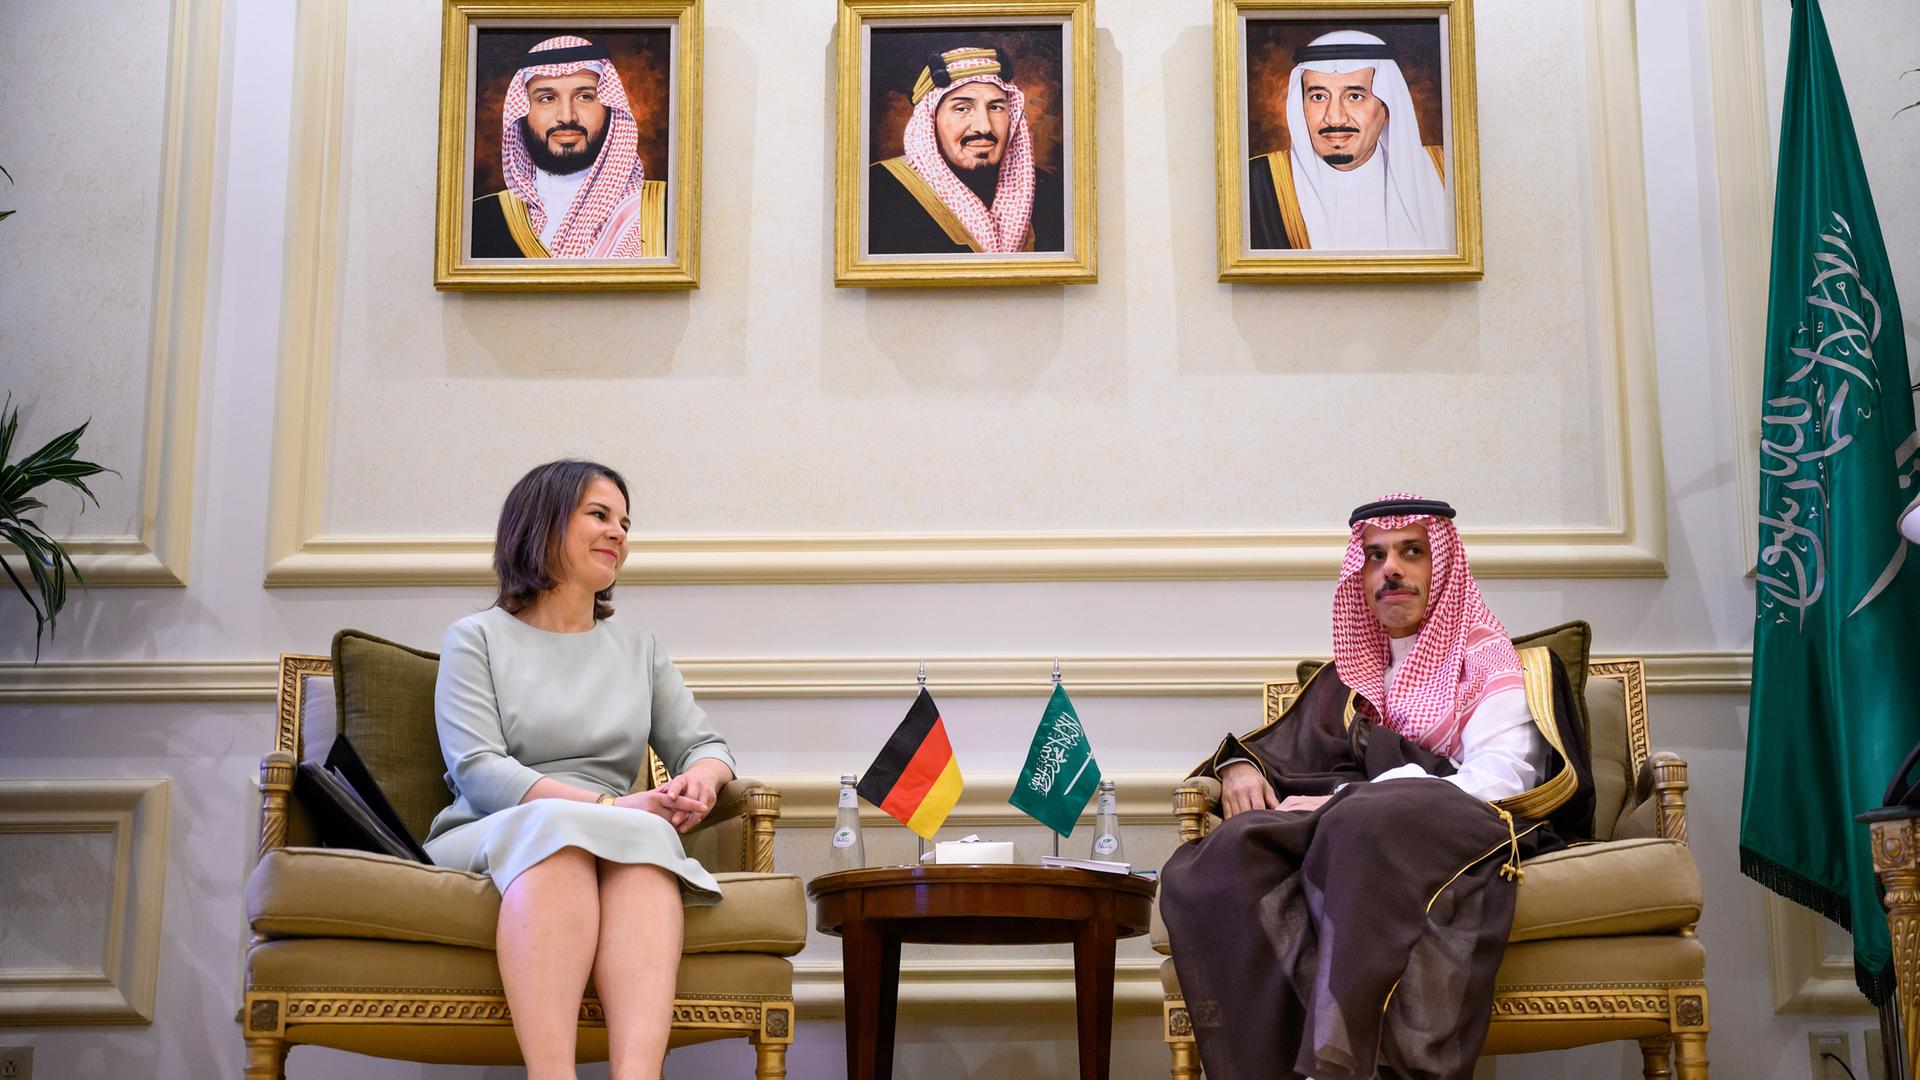 Außenministerin Annalena Baerbock (Bündnis 90/Die Grünen) und der saudische Außenminister Prinz Faisal bin Farhan bin Abdullah Al-Saud. Baerbock besuchte bei ihrer dreitägigen Reise an den Persischen Golf die Länder Saudi-Arabien und die Vereinigten Arabischen Emirate.